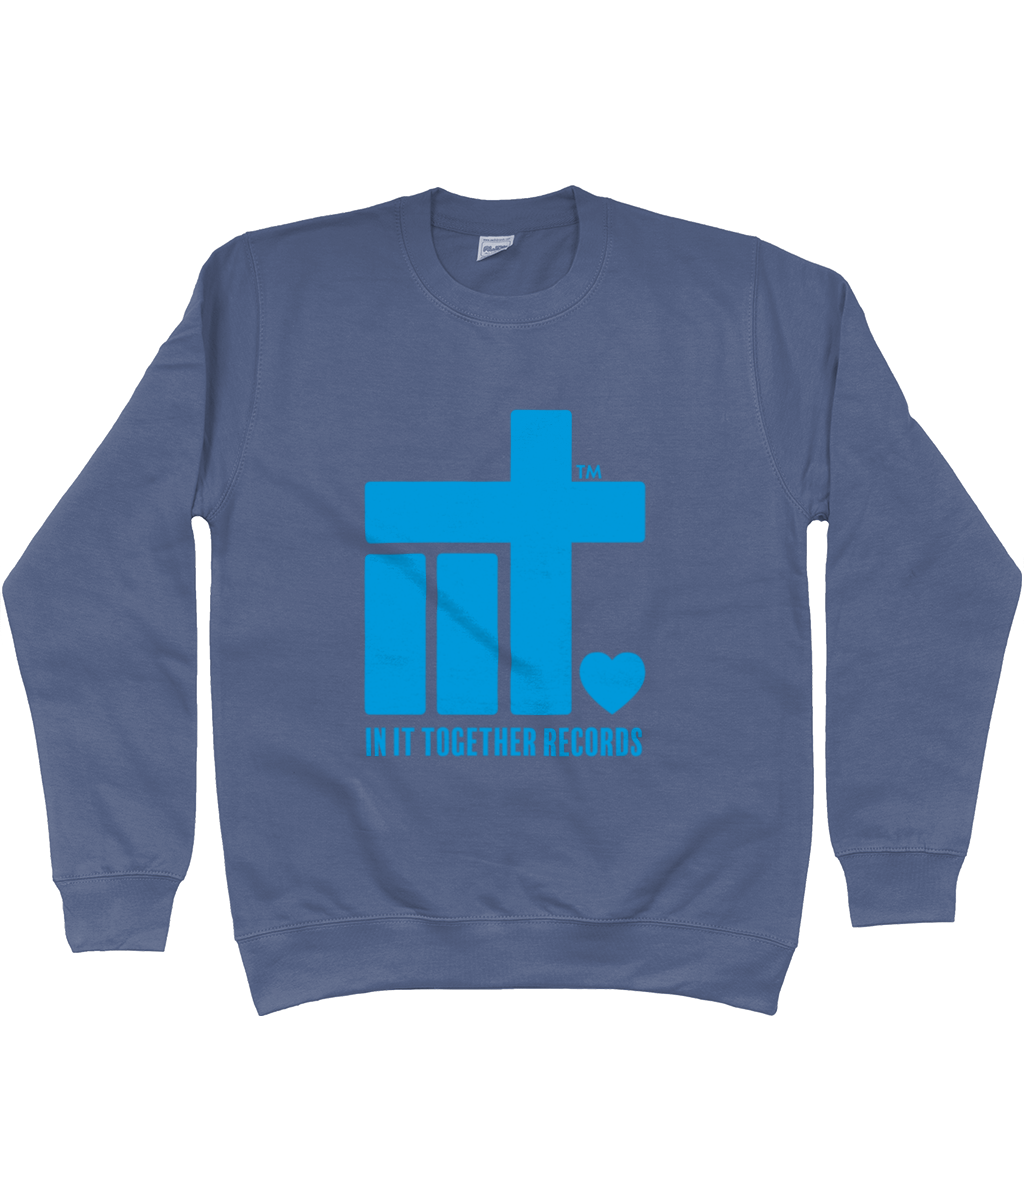 Sweatshirt IIT Blue